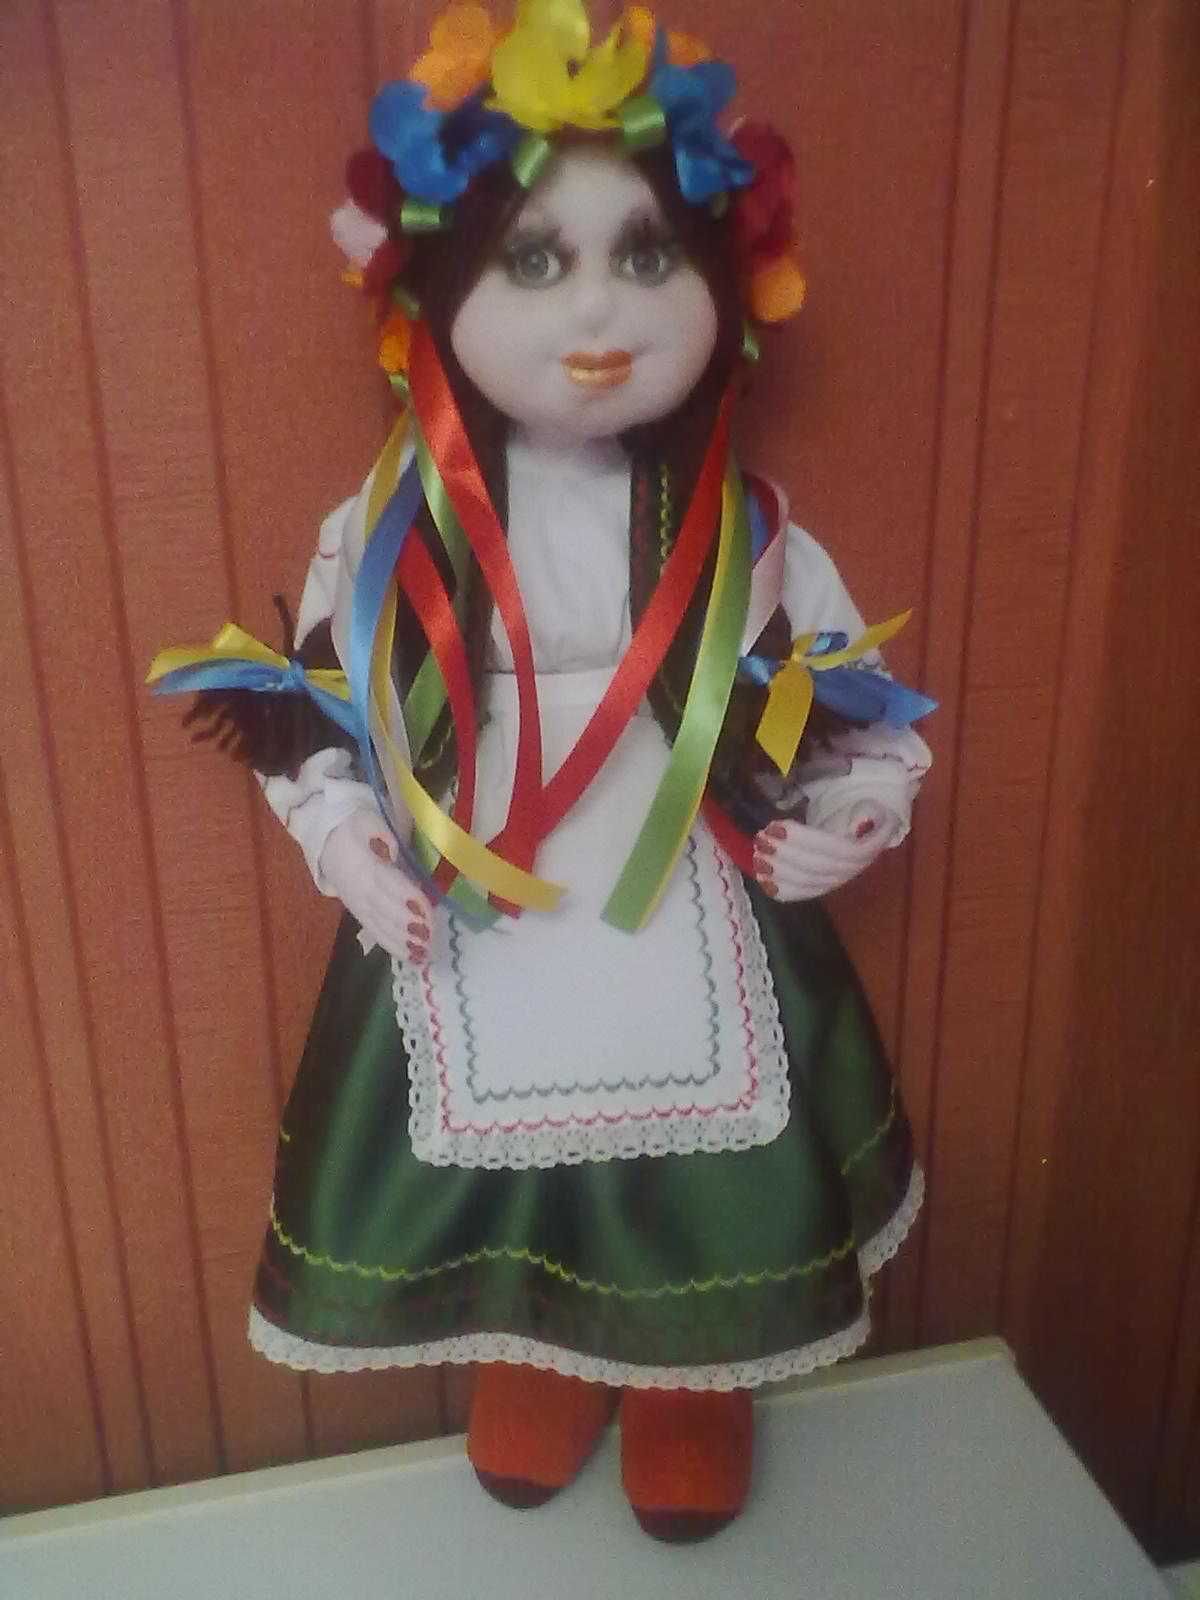 Калужанка делает куклы из капроновых колготок